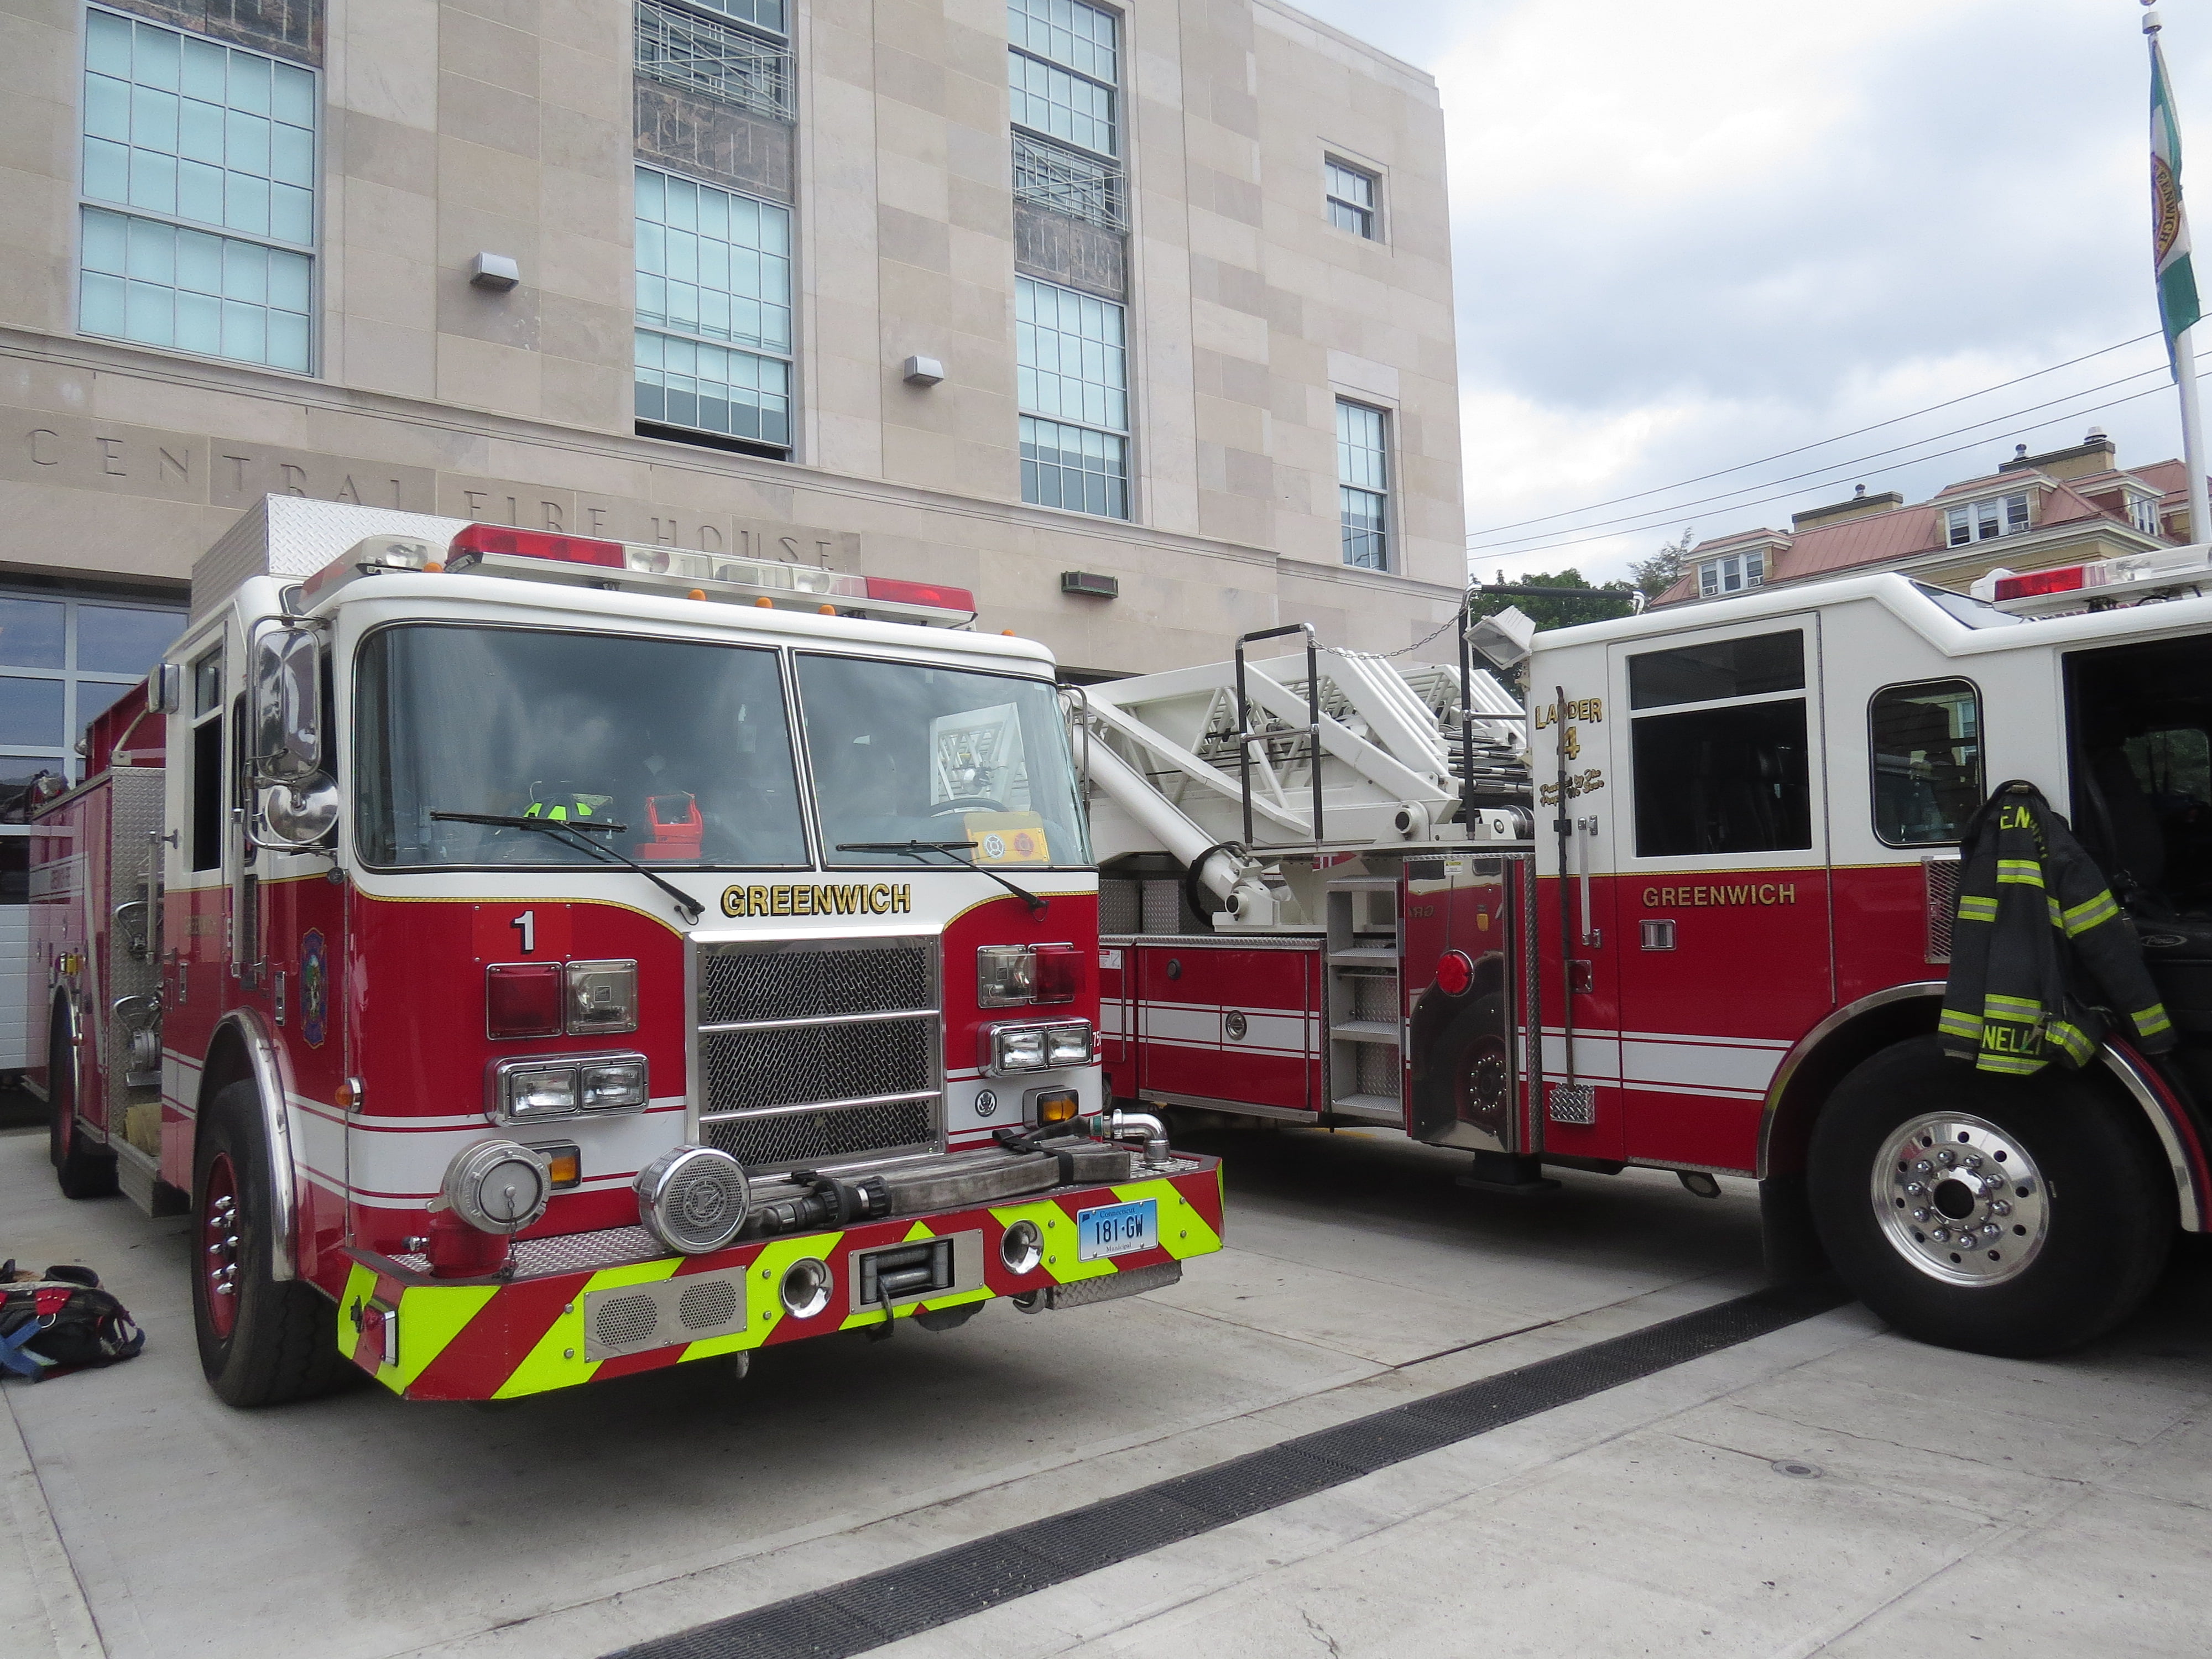 Fire trucks parked outside of Greenwich Fire Department headquarters. July 28, 2017. Photo: Devon Bedoya